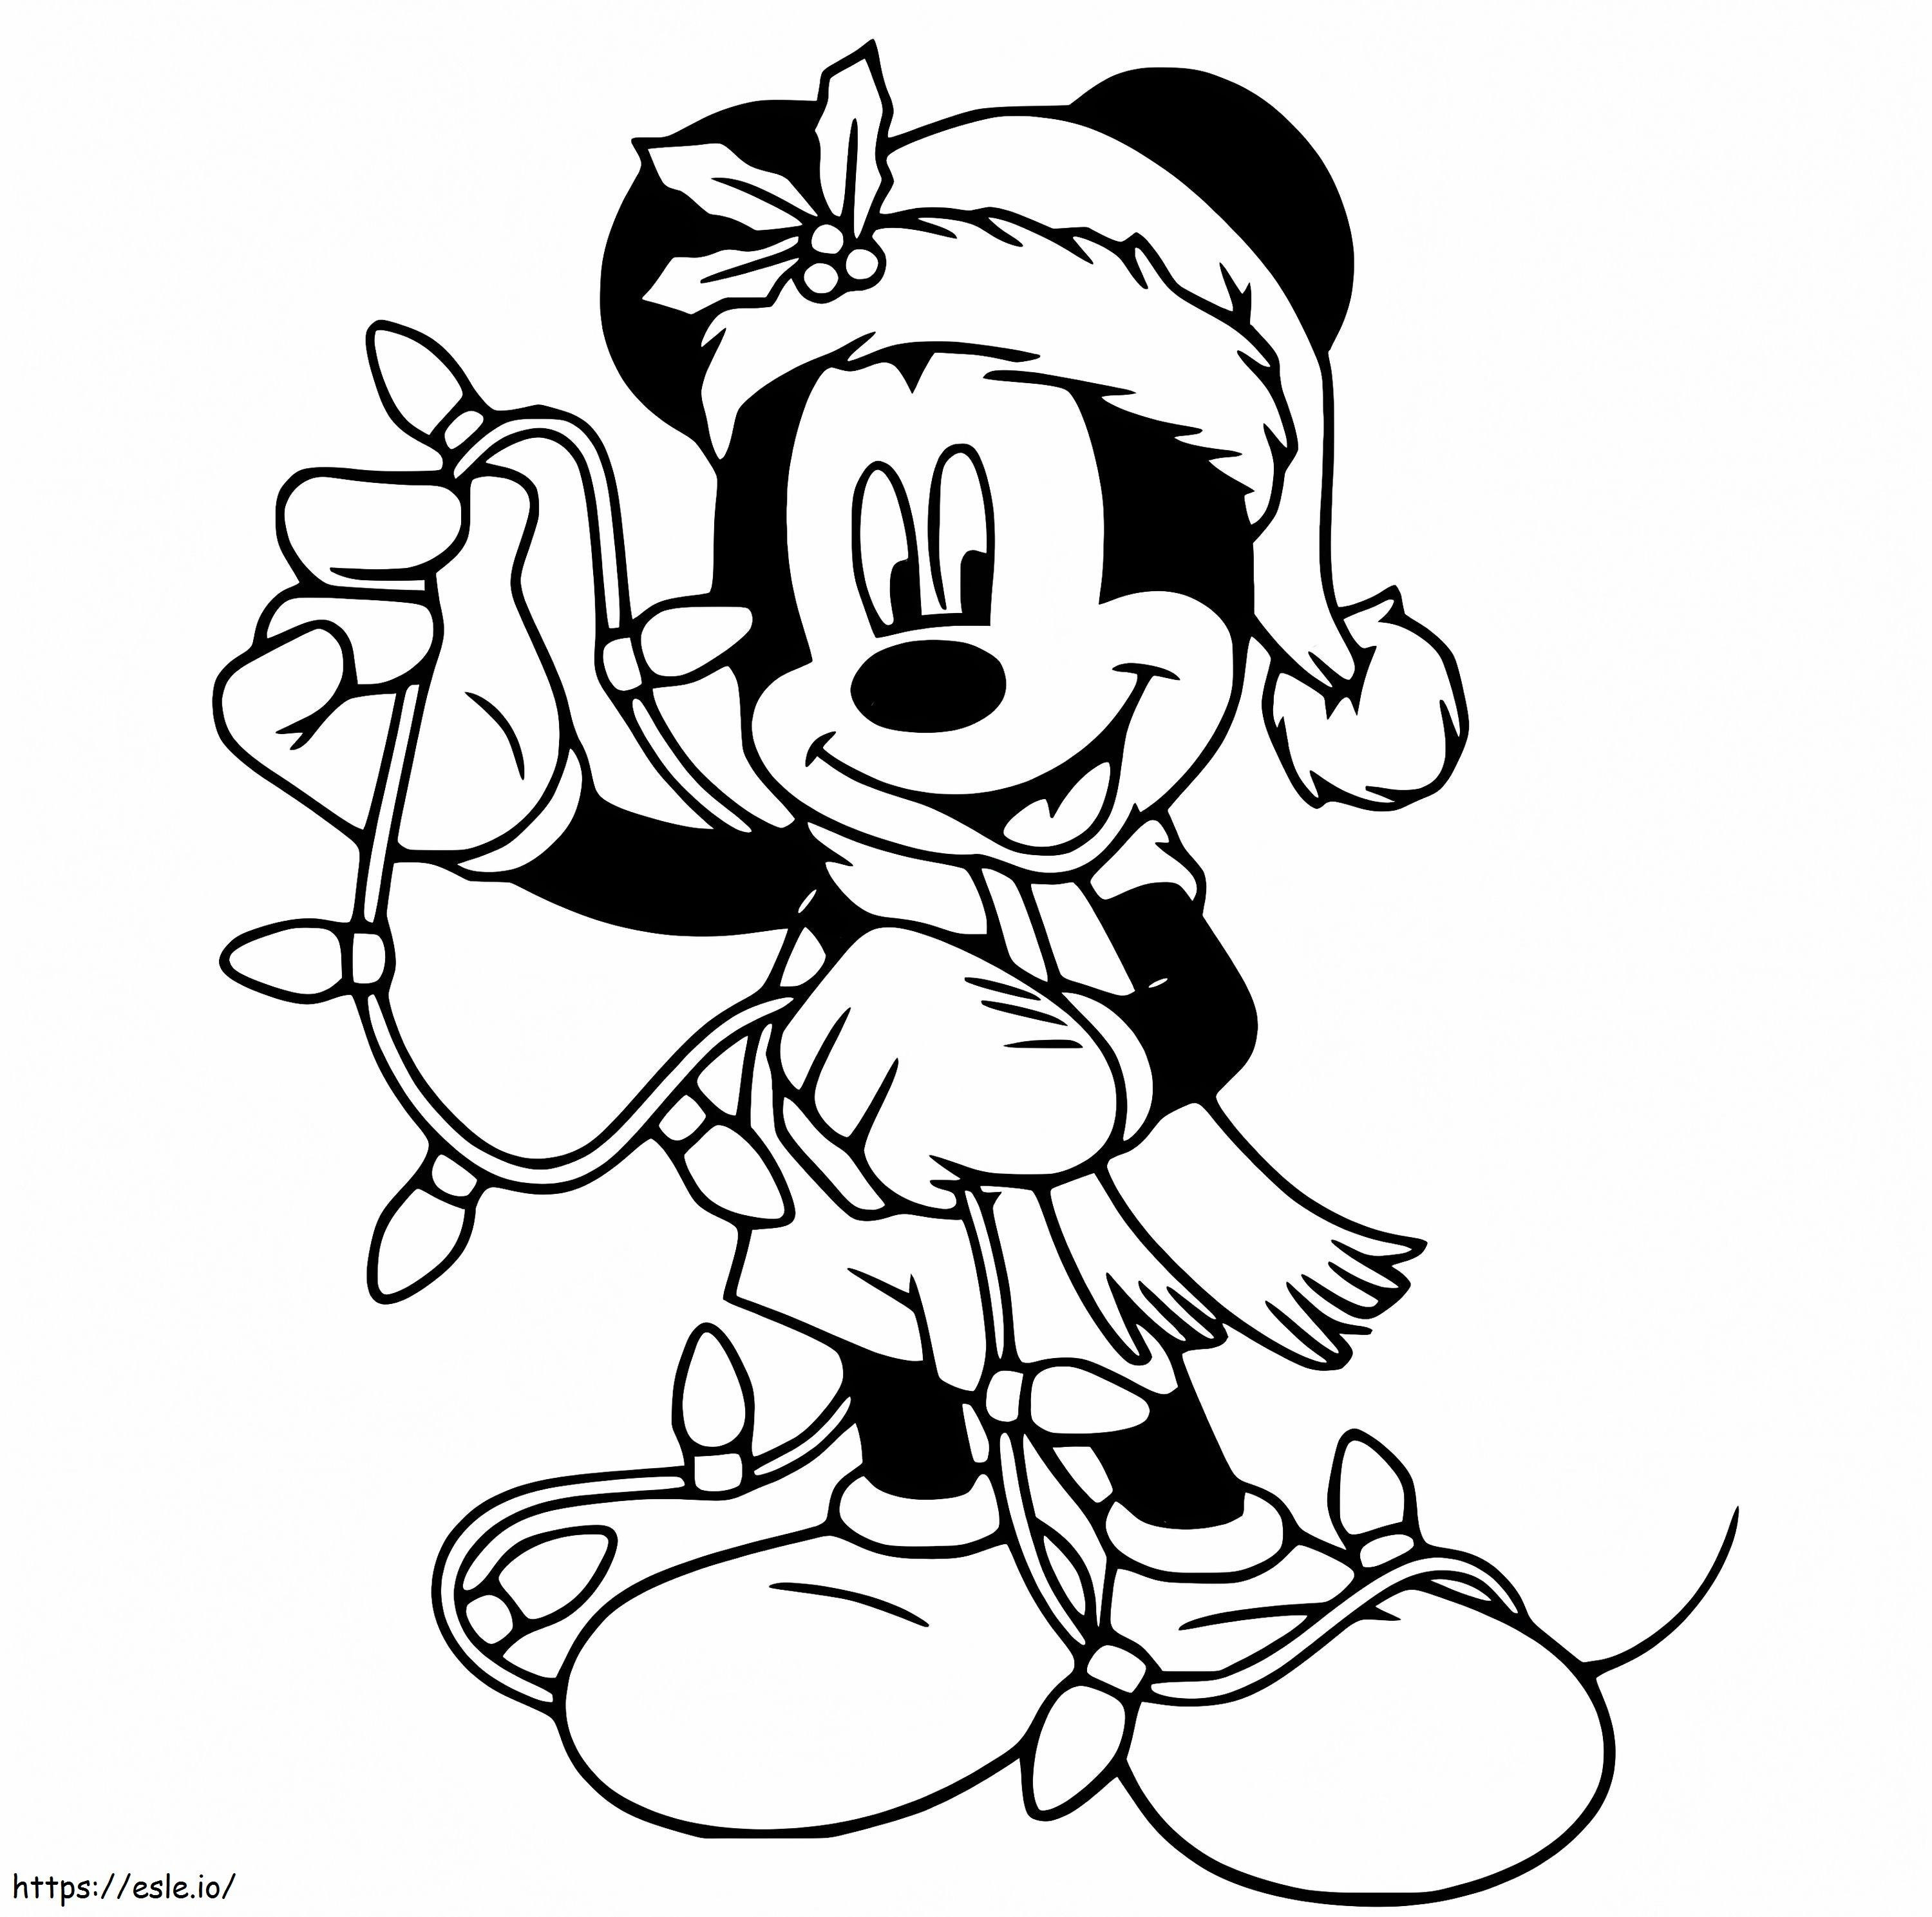 Mickey cu lumini de Crăciun de colorat